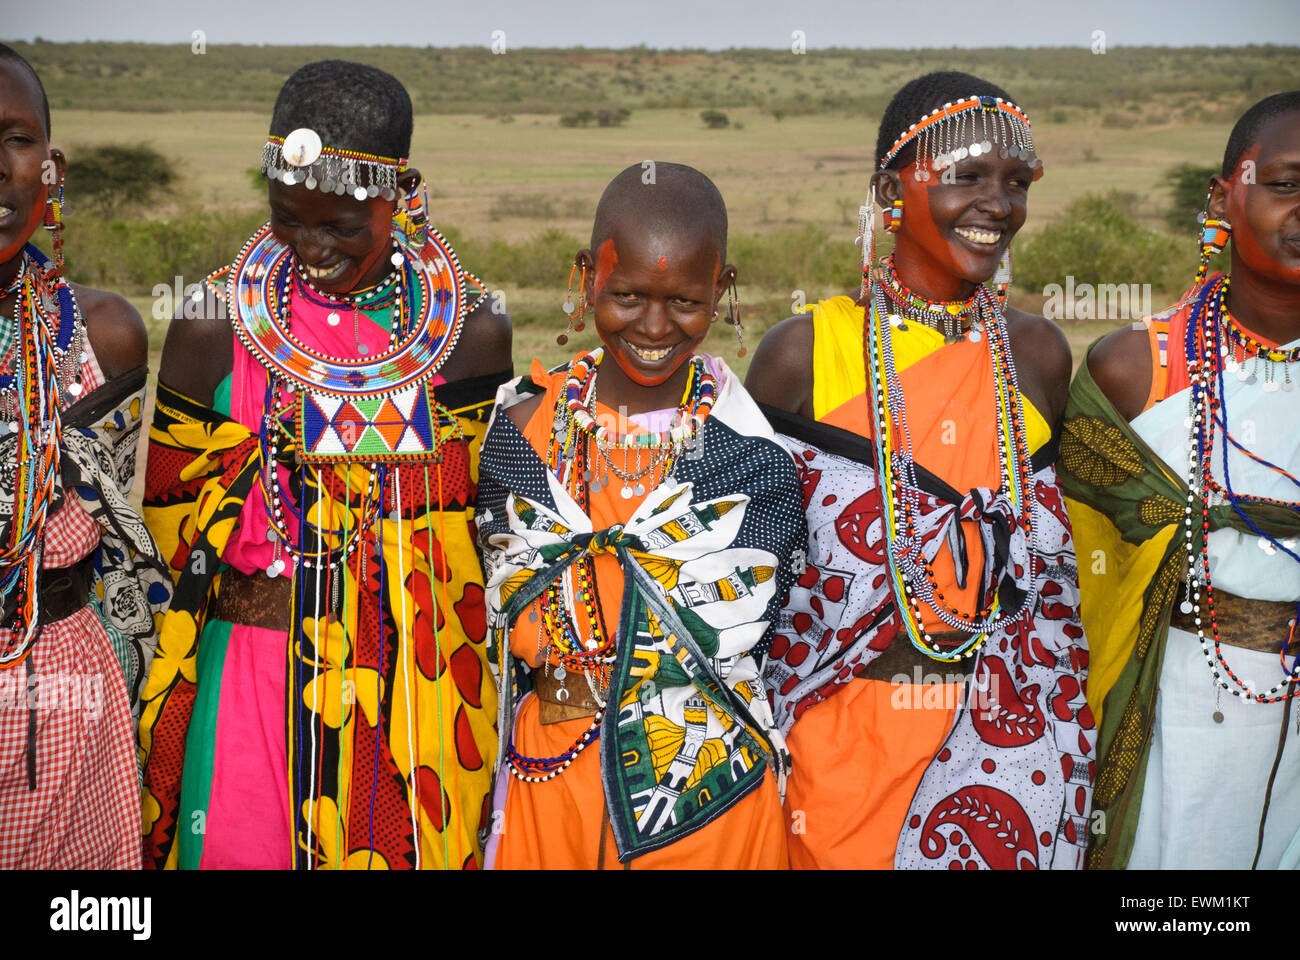 Les femmes masaï portant des vêtements traditionnels colorés, chantant, riant et souriant dans un village près de la Masai Mara, Kenya, Afrique Banque D'Images